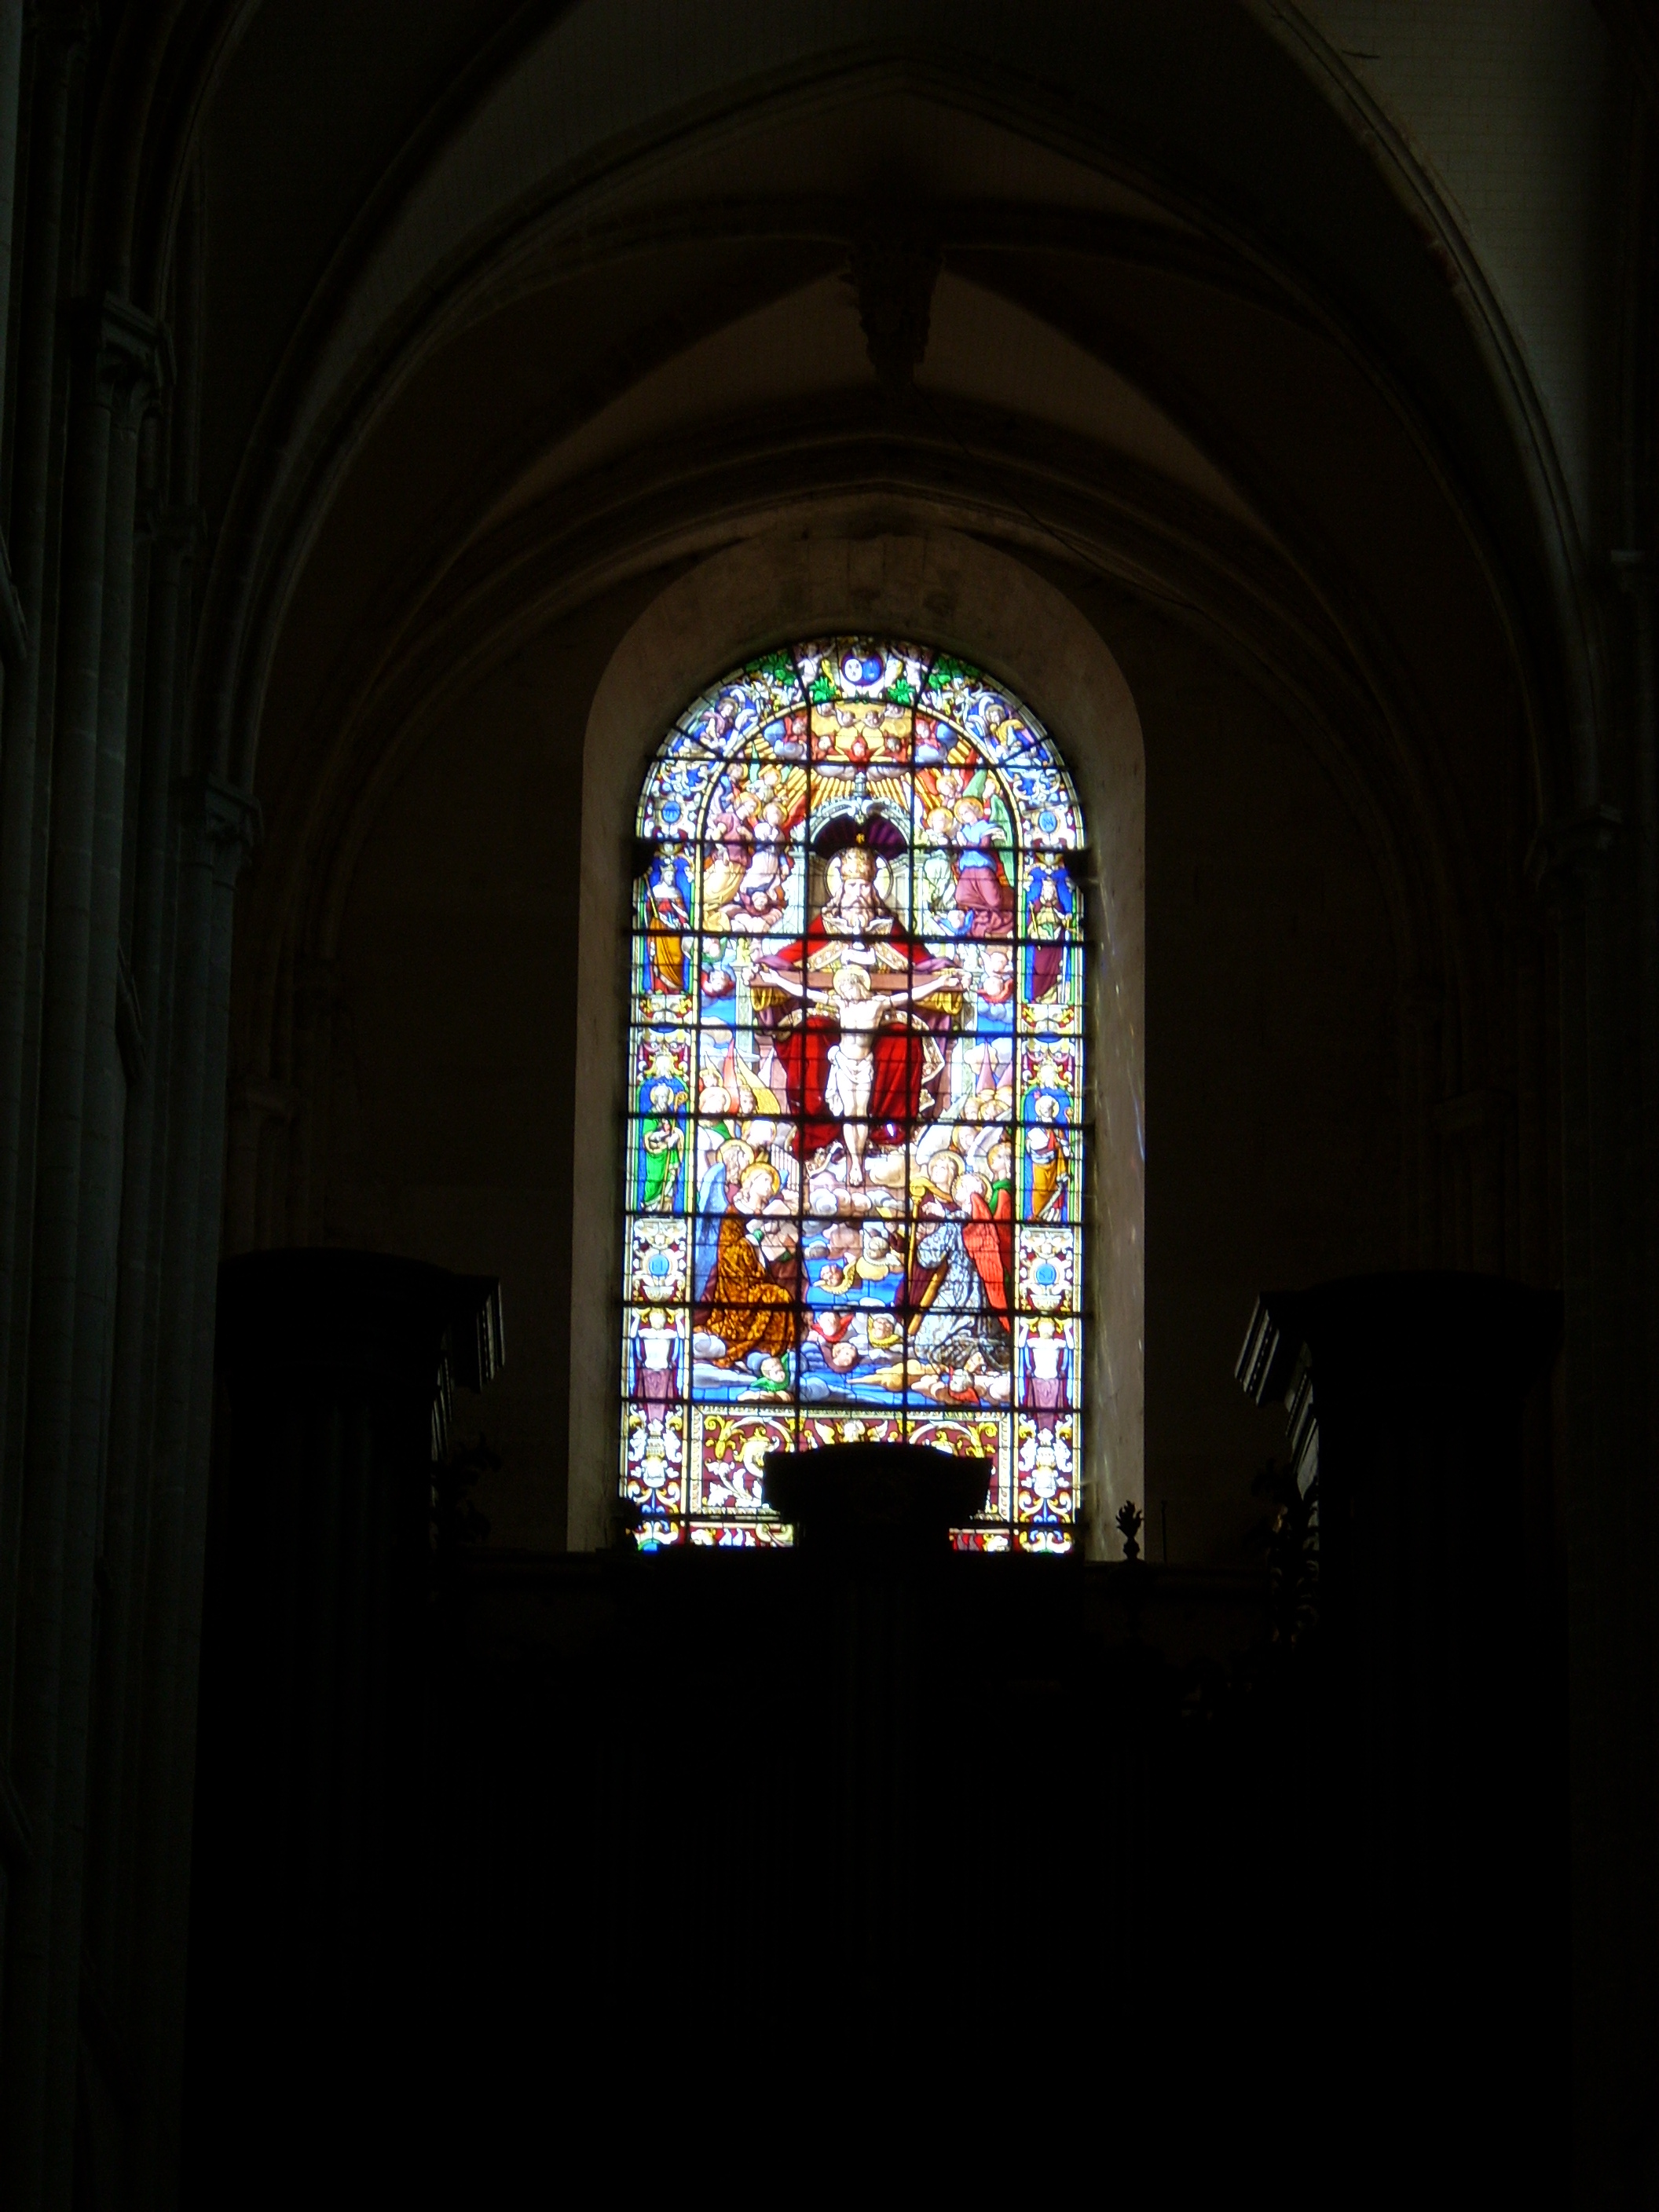 Au-dessus de l’orgue Cavaillé-Coll, on aperçoit le vitrail de Boulanger offert par les paroissiens en 1883 qui représente la Trinité.